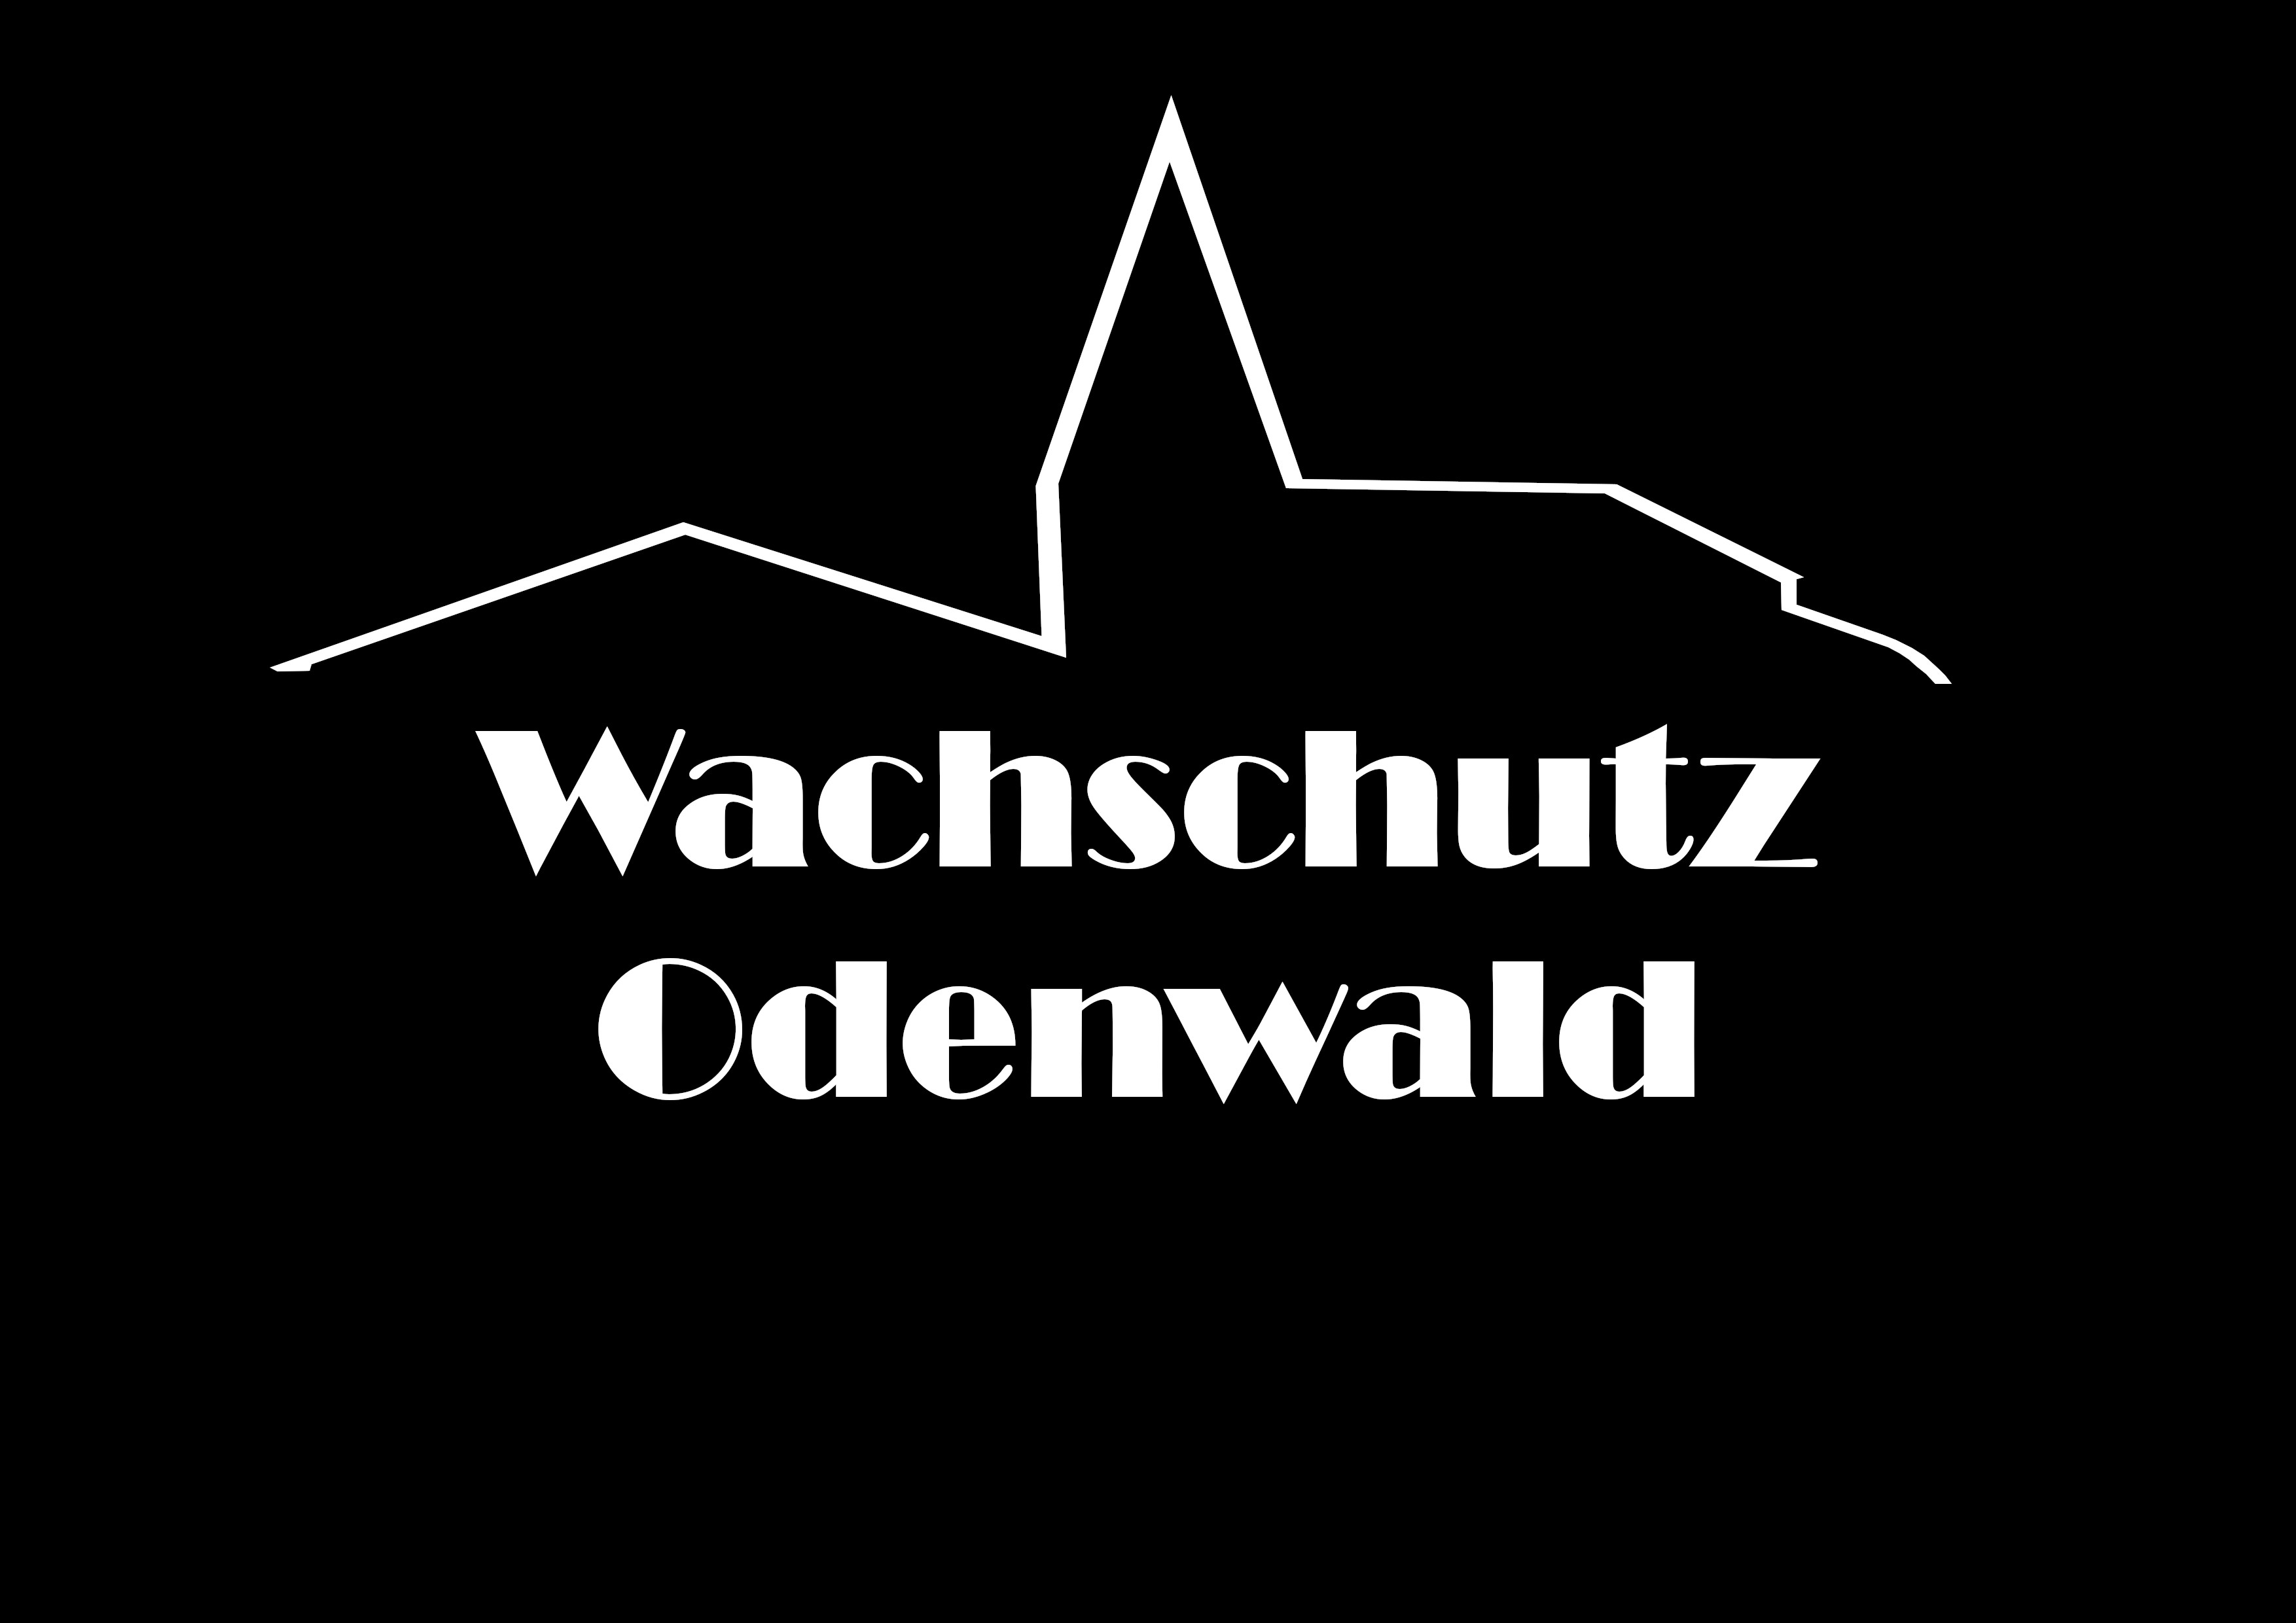 Wachschutz Odenwald